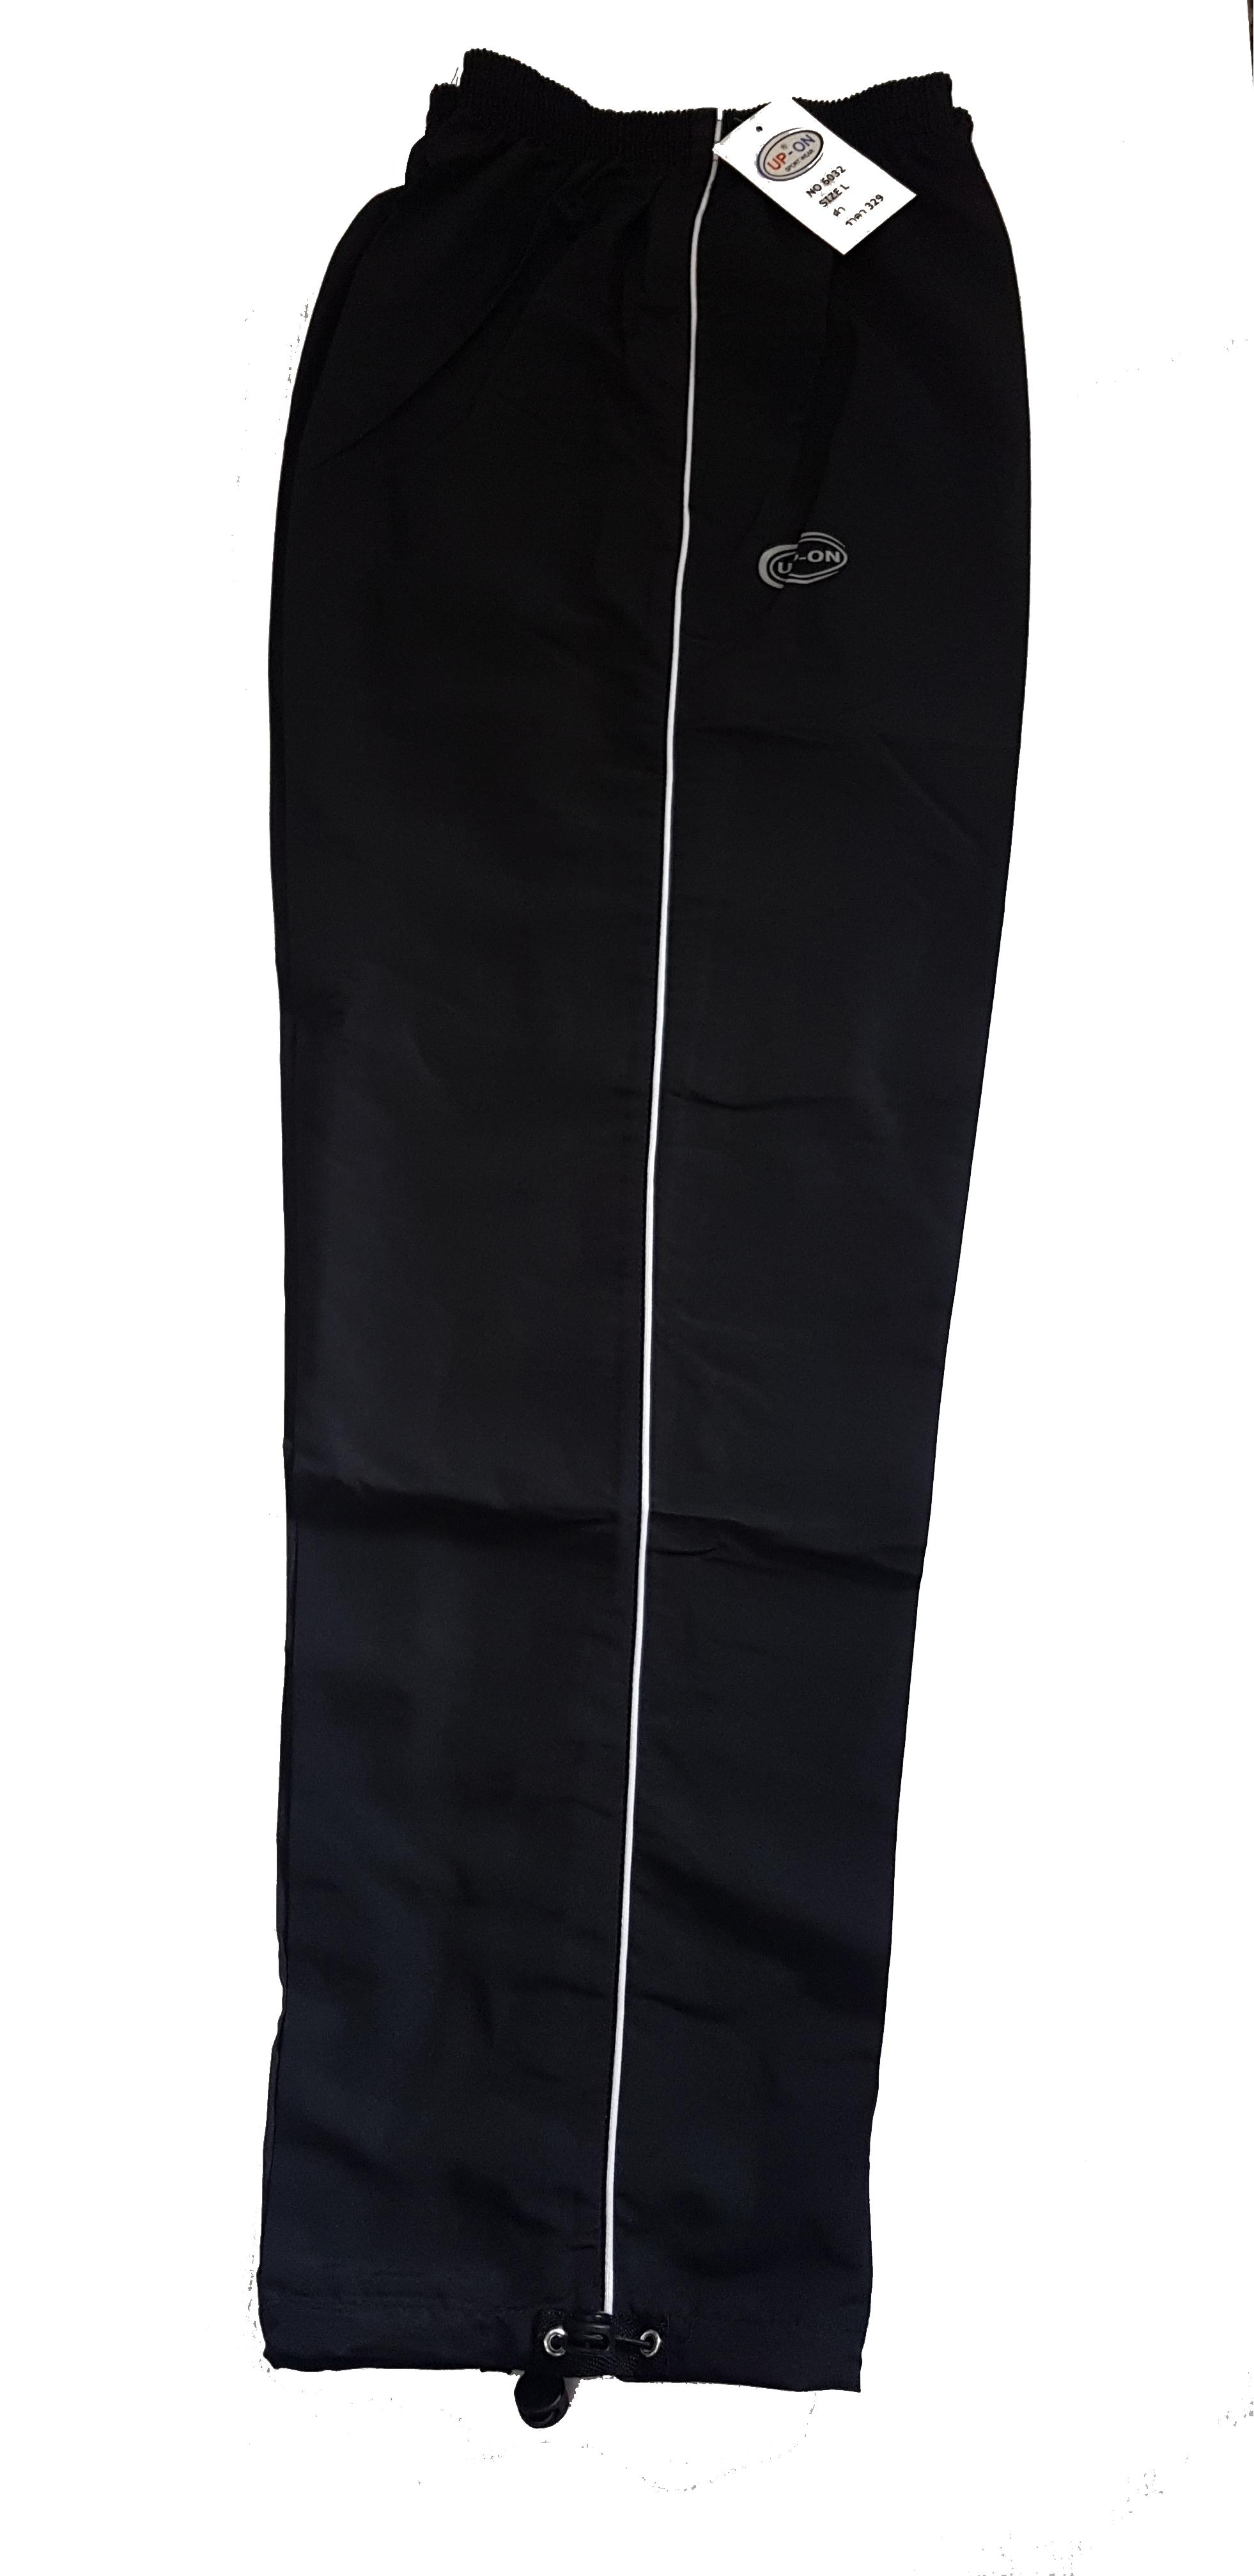 กางเกงผ้าร่มขายาว สีดำ แถบเส้นเดียว ยี่ห้อ UP-ON  Made in Thailand! ใส่ได้ทุกเพศทุกวัย ไม่มีซัพใน